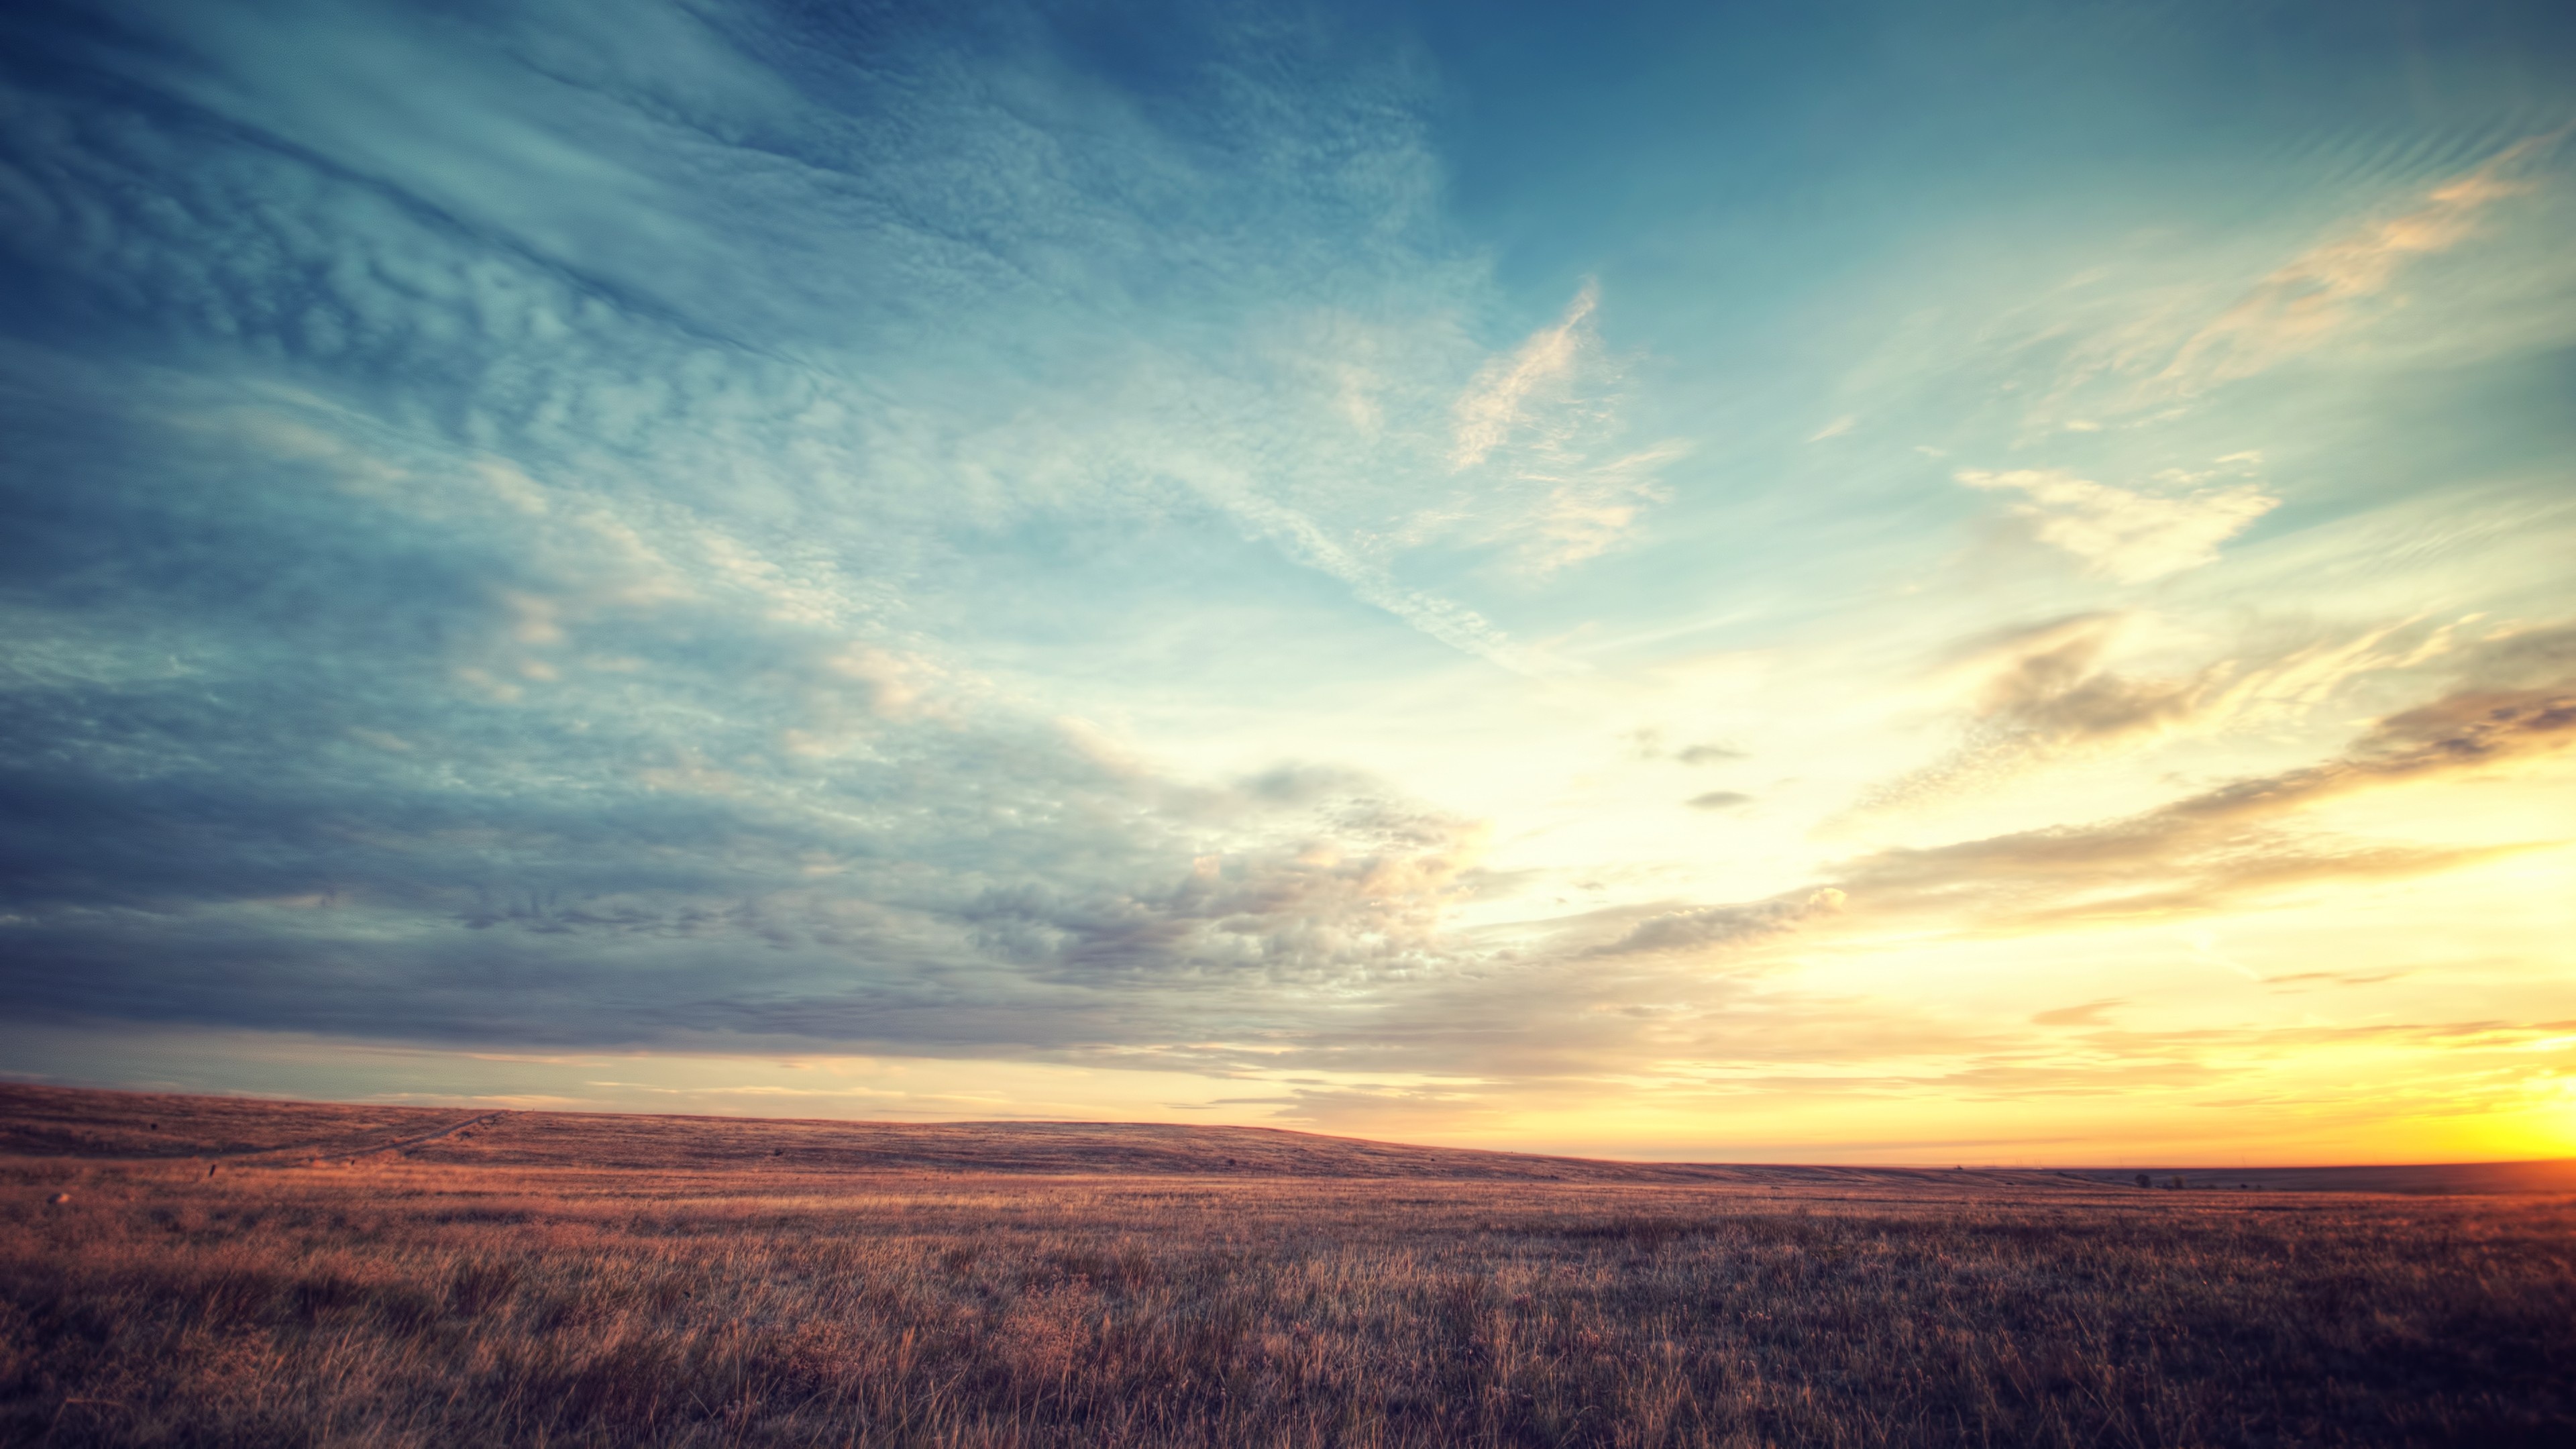 Grassland: Sunlight, Landscape, Sunset, Hill, Nature, Field, Horizon, Dusk, Clouds, Plain, Prairie. 3840x2160 4K Wallpaper.